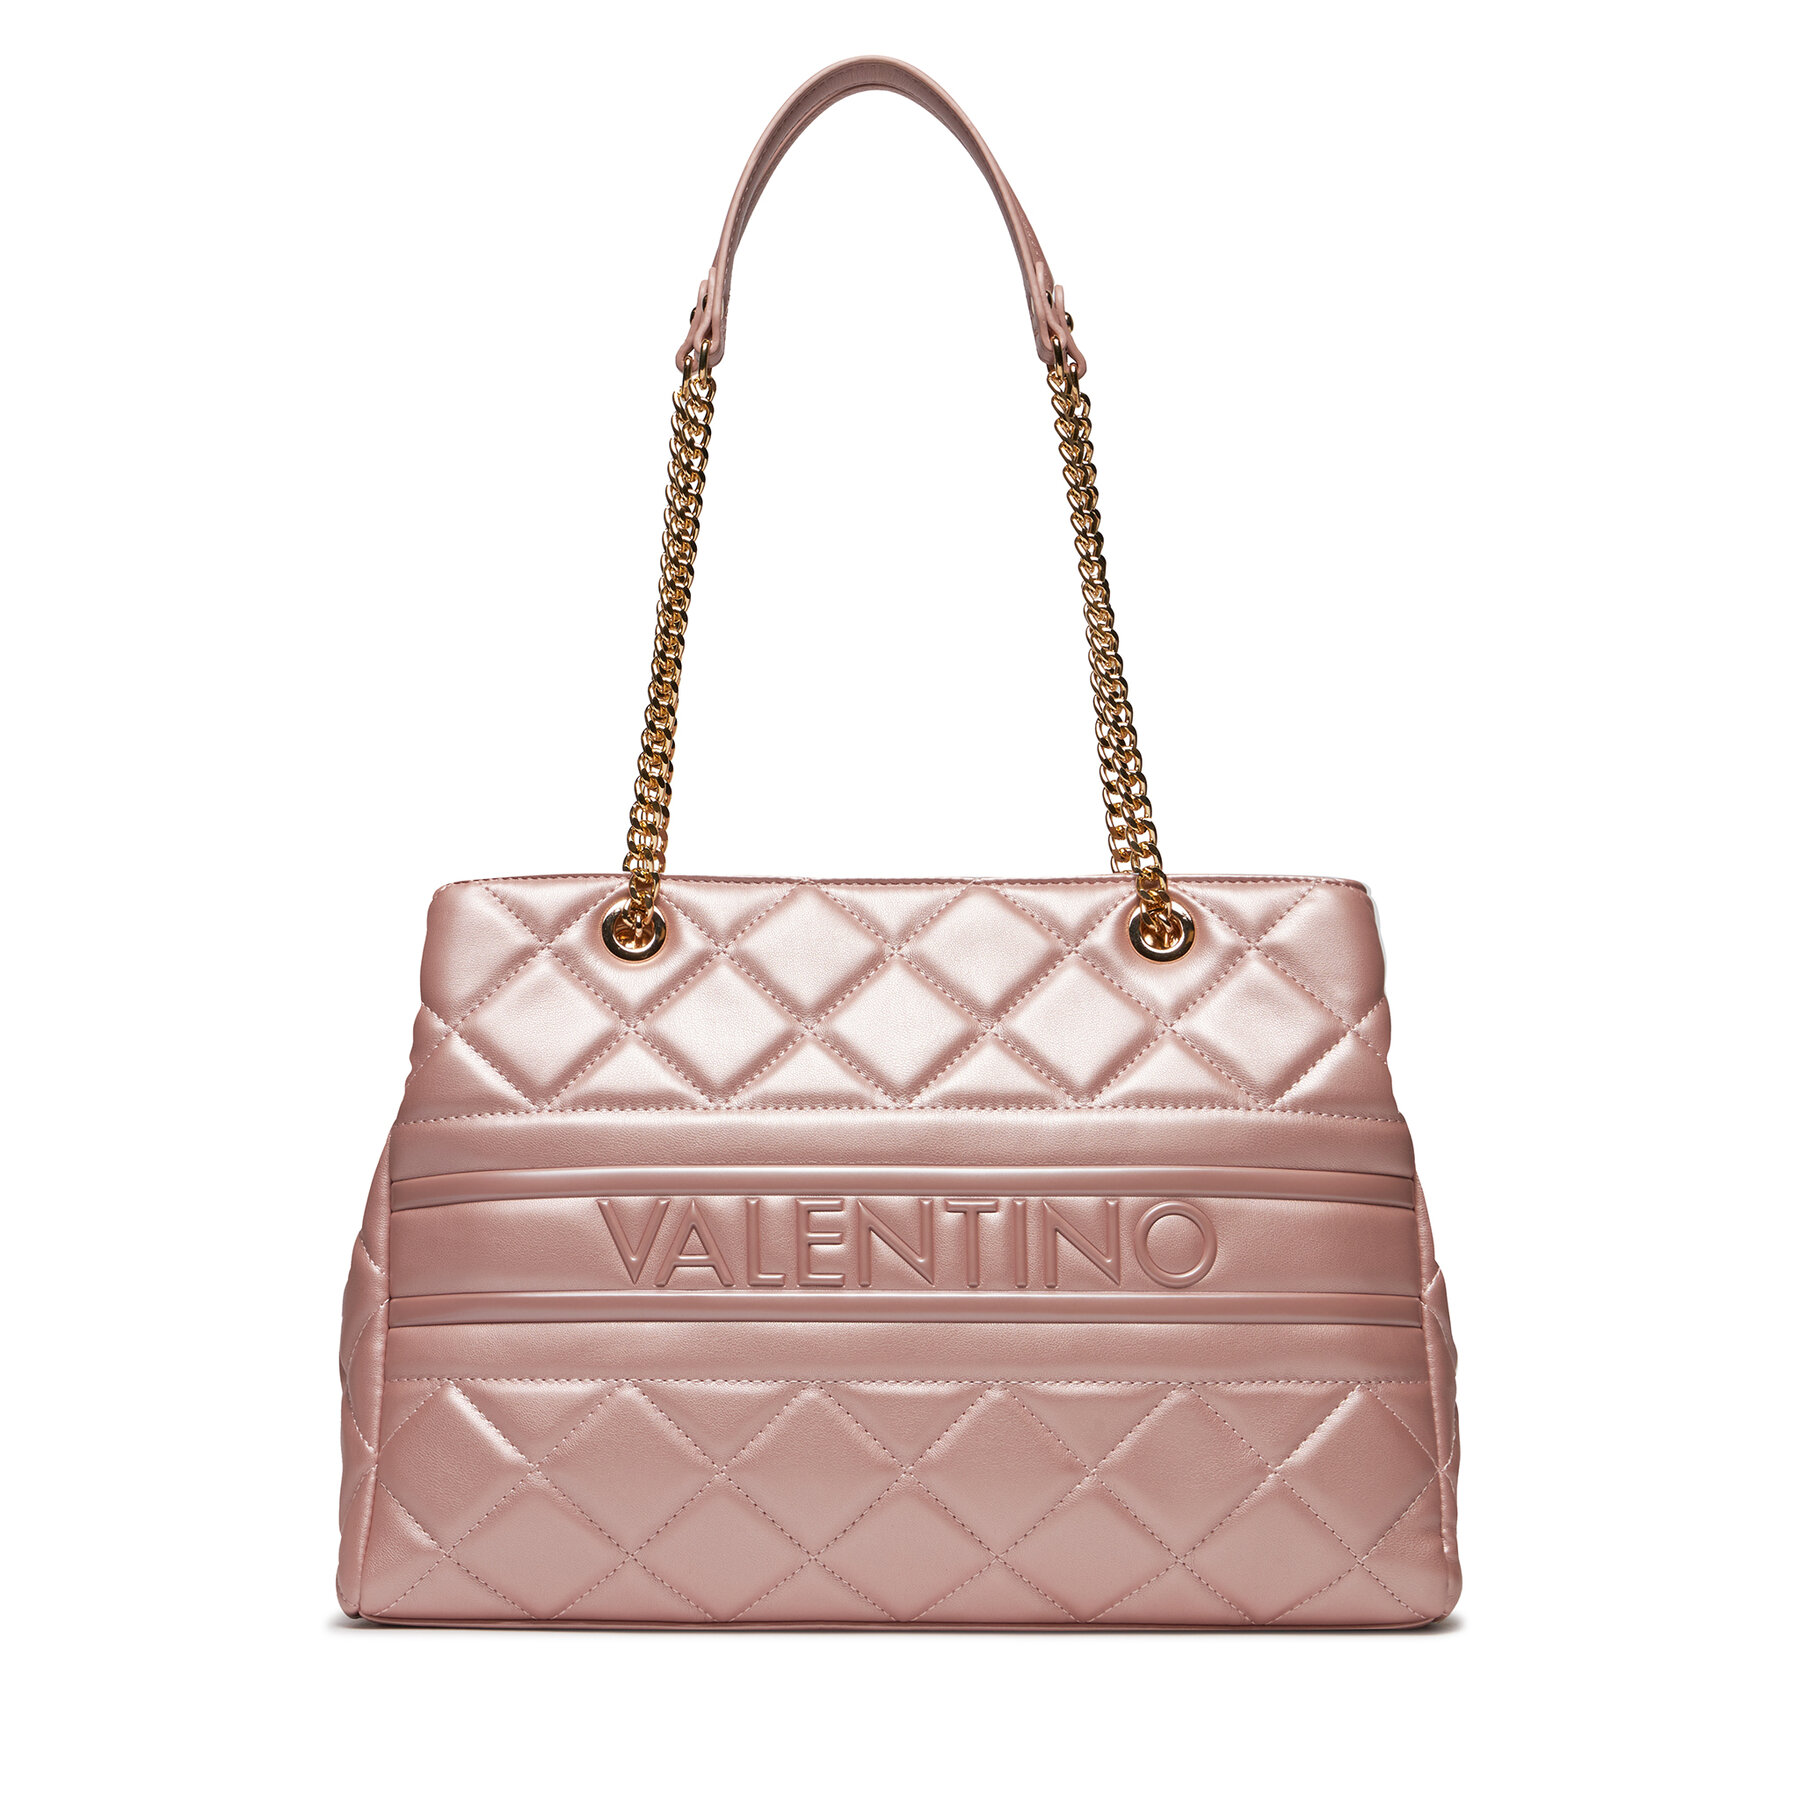 Handtasche Valentino Ada VBS51O04 Rosa Metallizzato V89 von Valentino